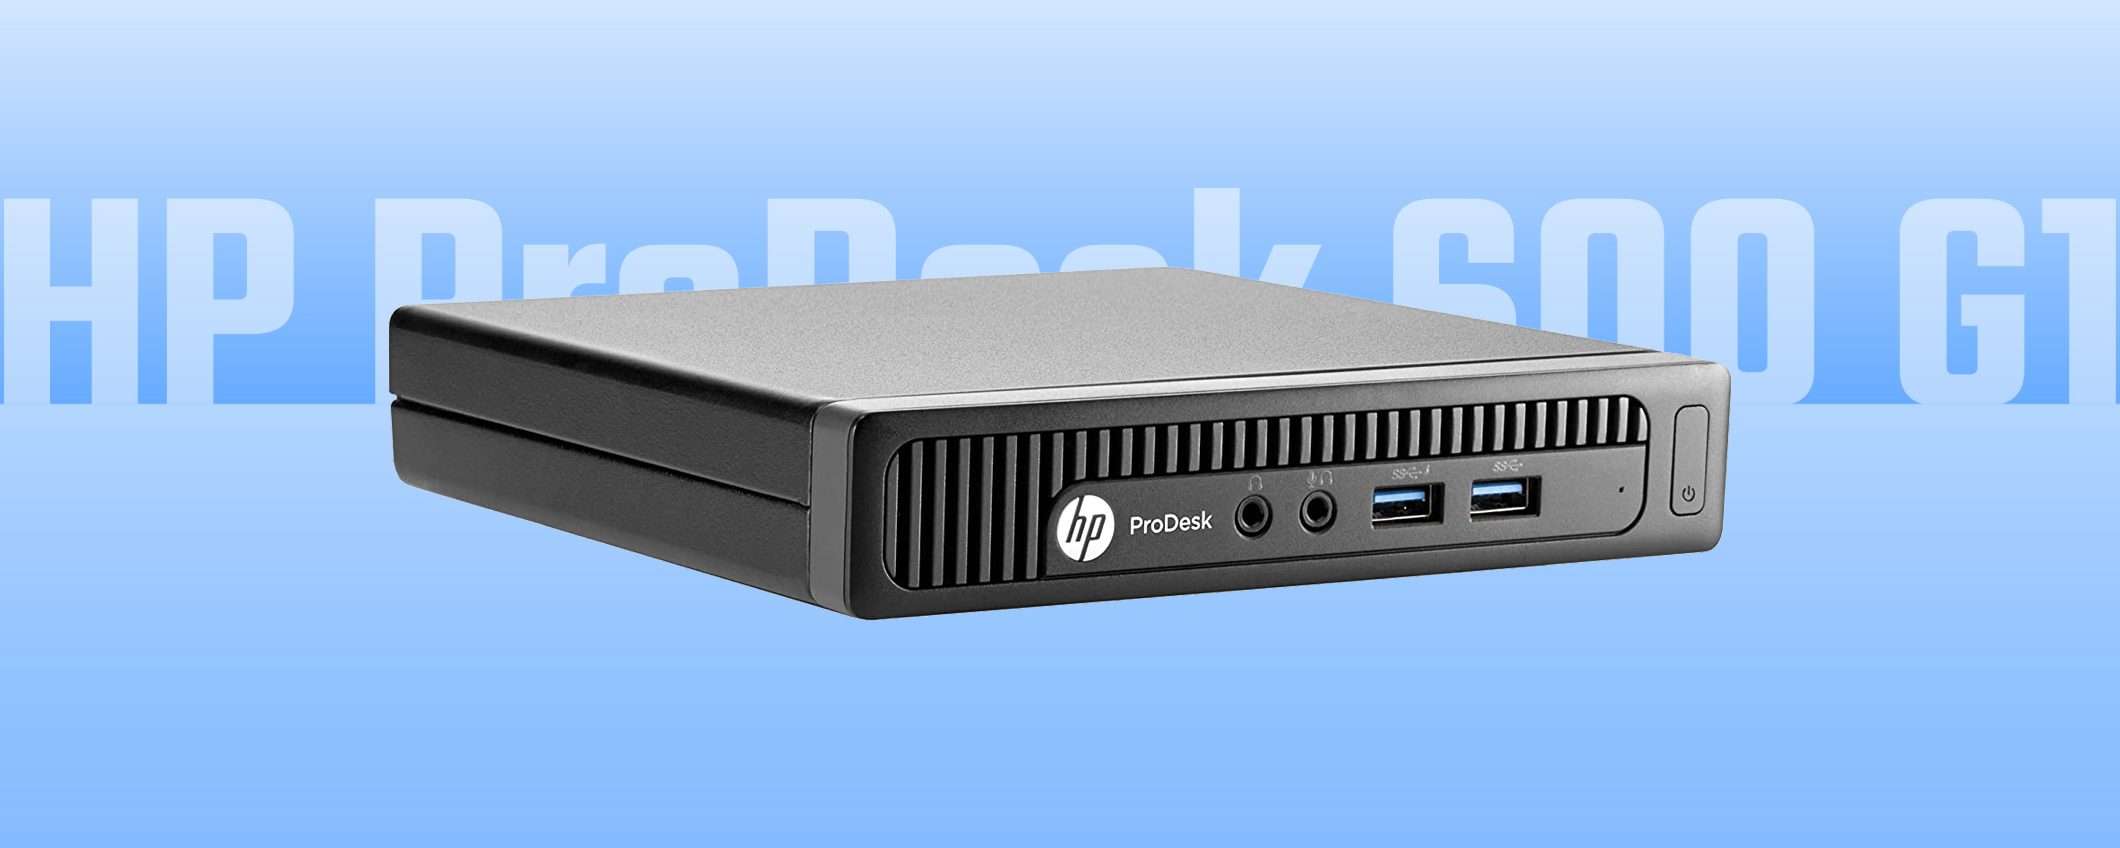 Il Mini PC di HP scende sotto i 100 euro: l'affare